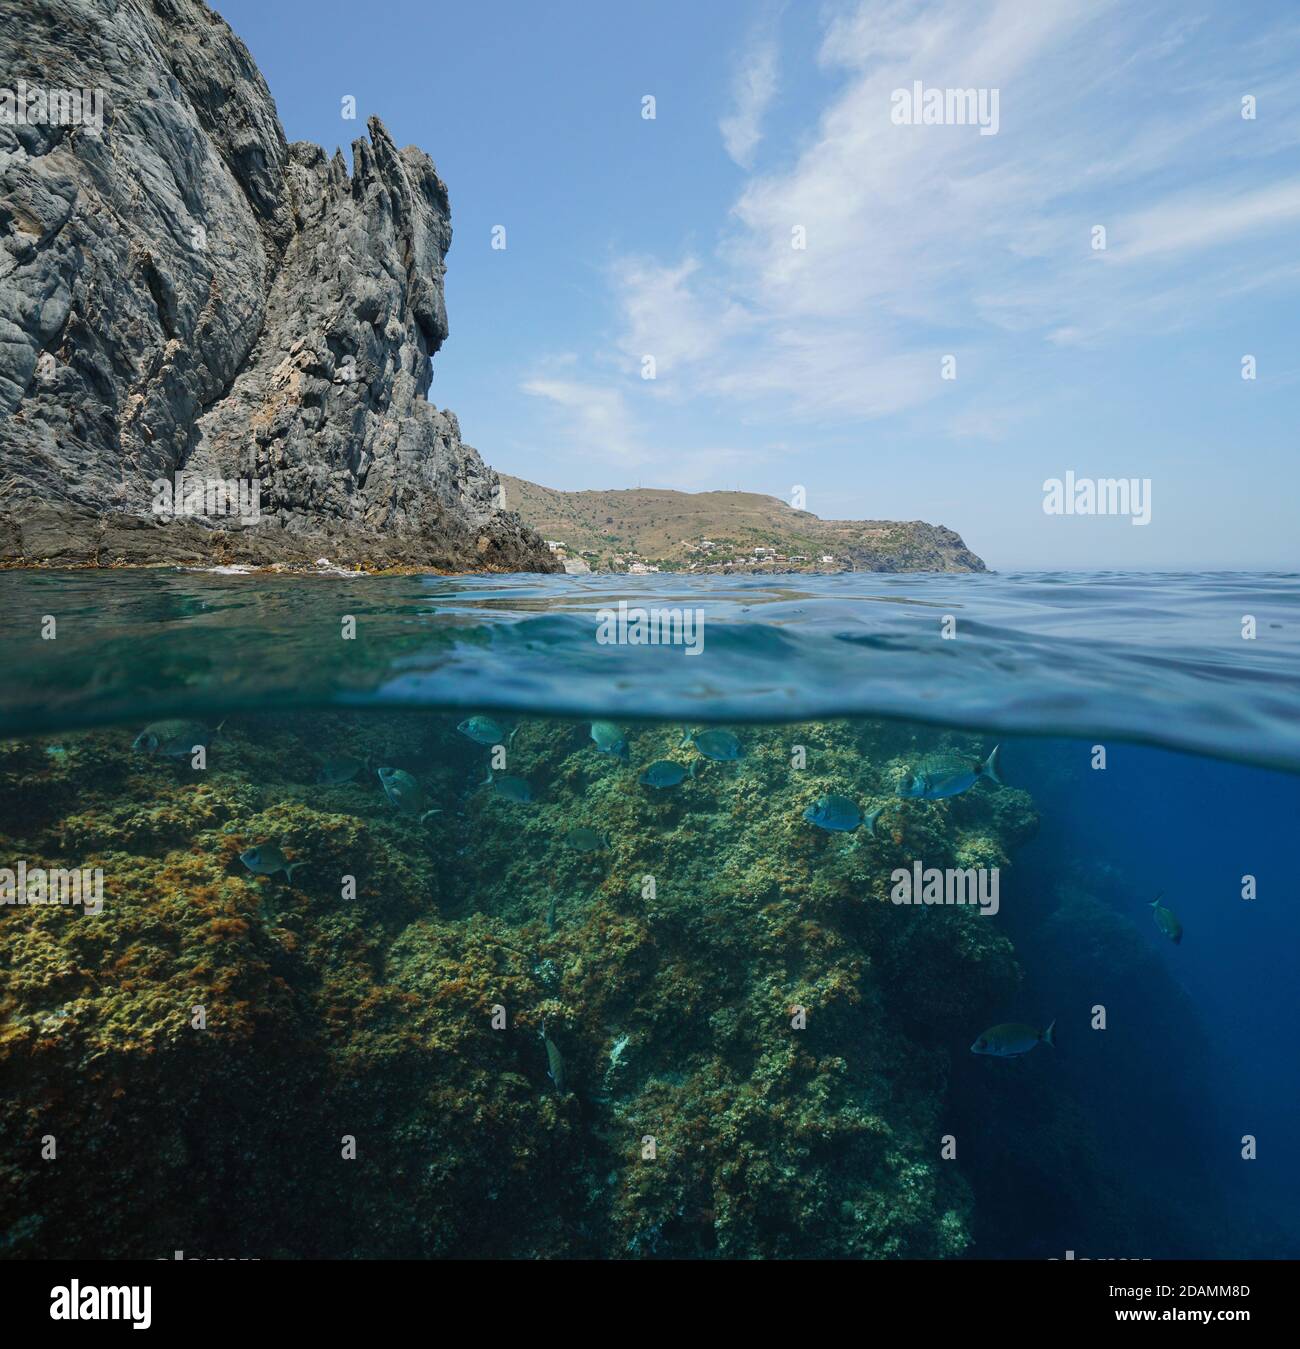 Bord de mer Méditerranée, côte rocheuse avec poissons marins sous l'eau, vue partagée à moitié sur et sous l'eau, Espagne, Costa Brava, Colera, Catalogne Banque D'Images